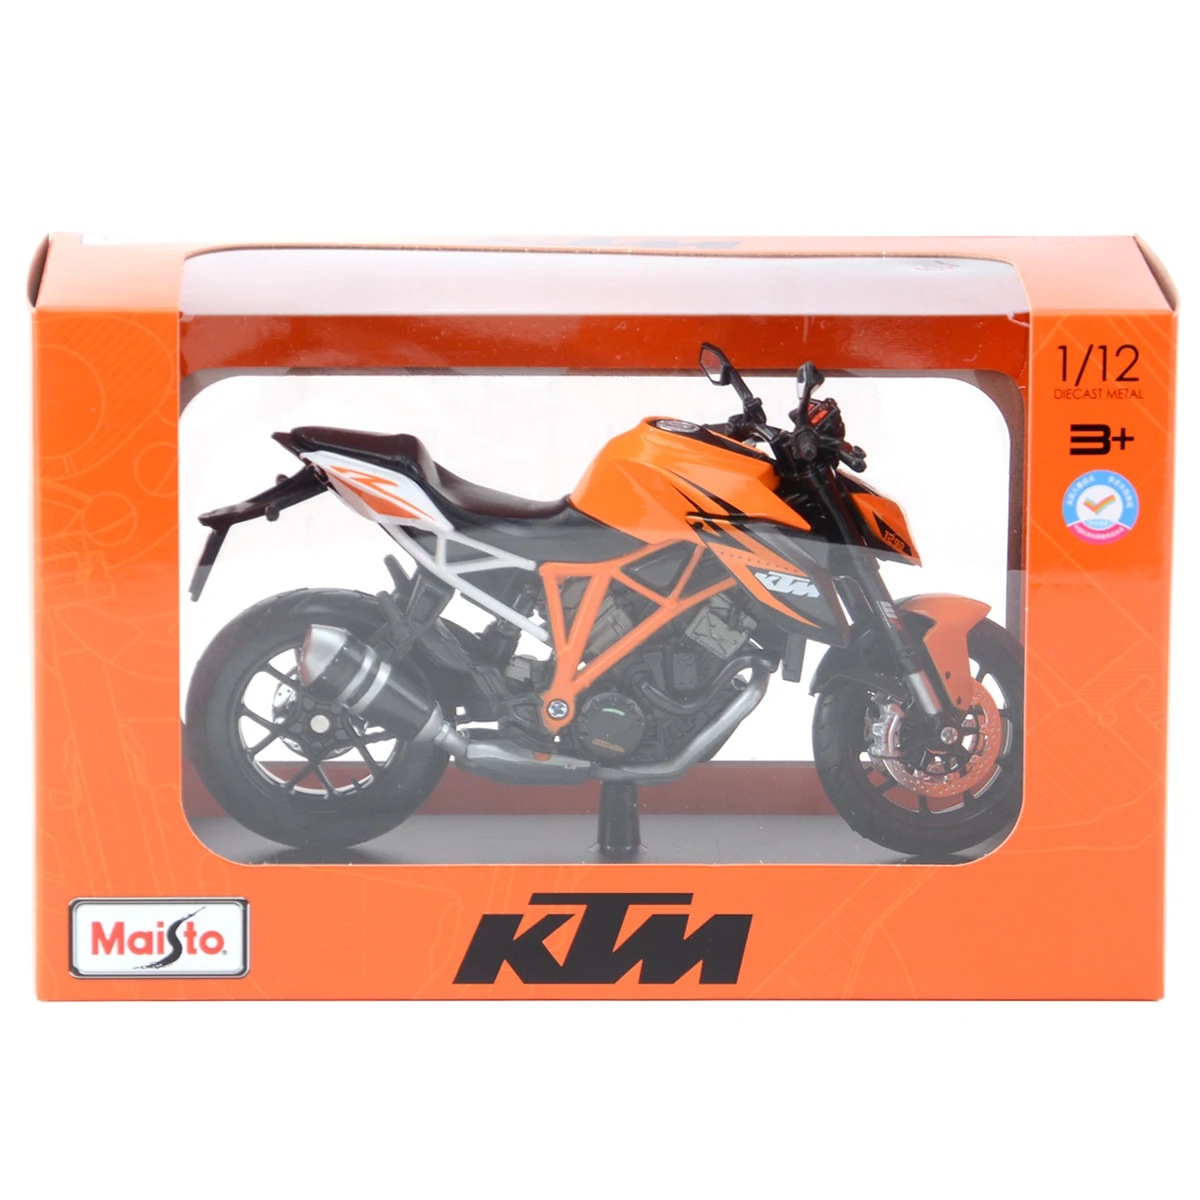 Maisto 1:12 KTM 1290 Super książę R z podstawą odlew pojazdy kolekcjonerskie hobby Model motocykla zabawki